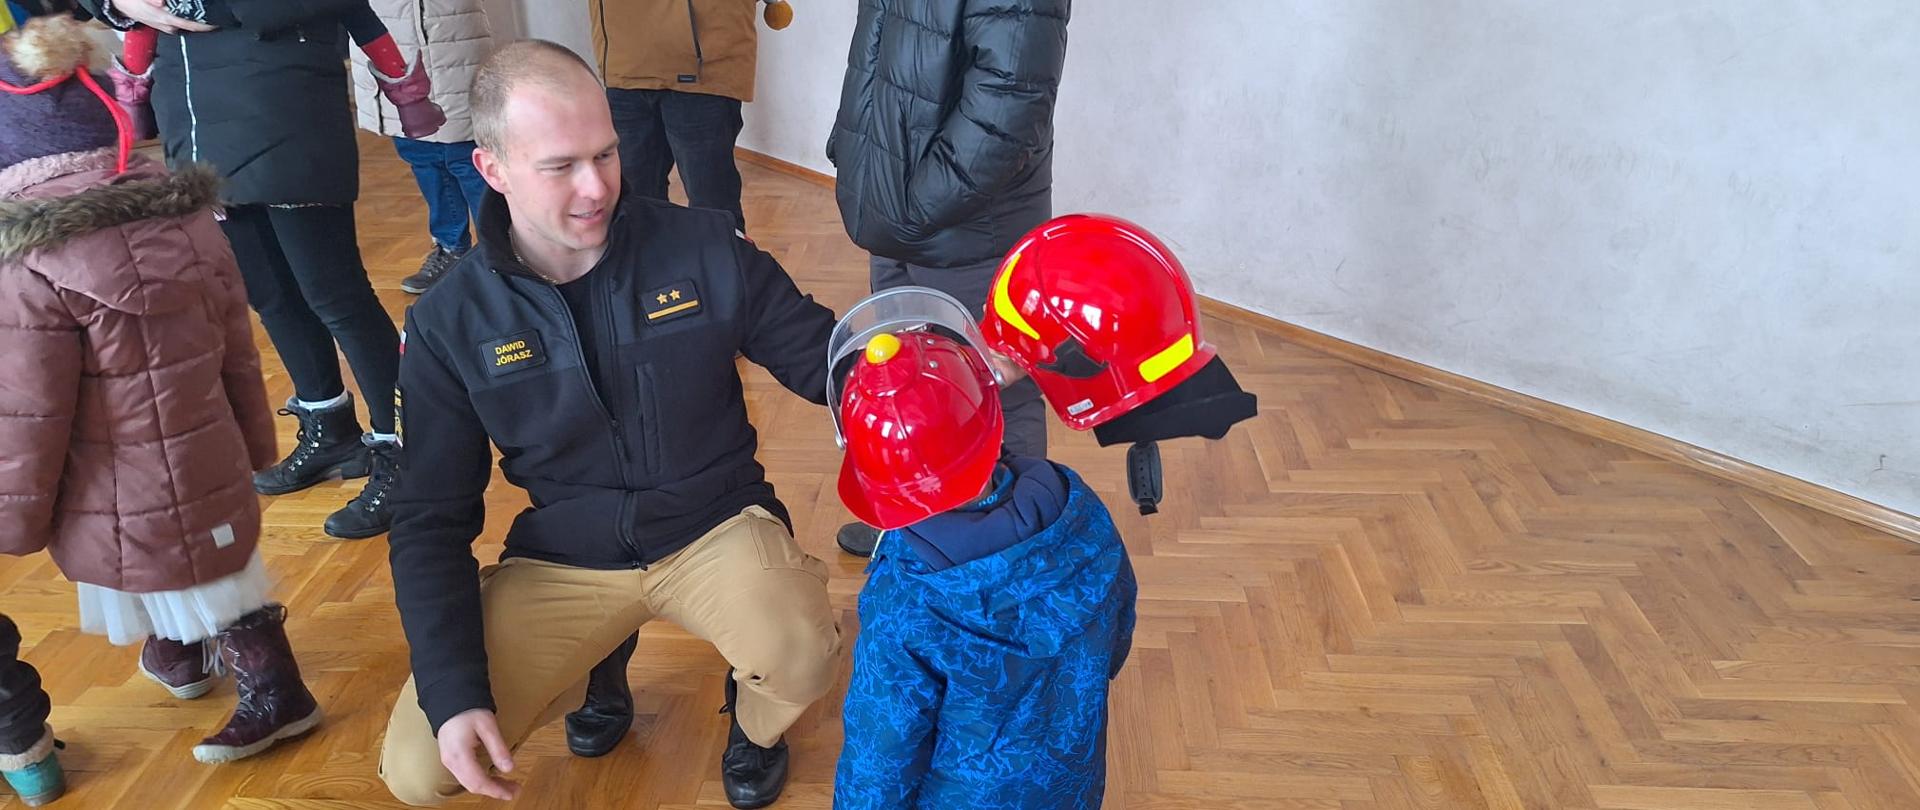 Strażak prezentuje dziecku hełm strażacki, po lewej stoją zgromadzeni goście.